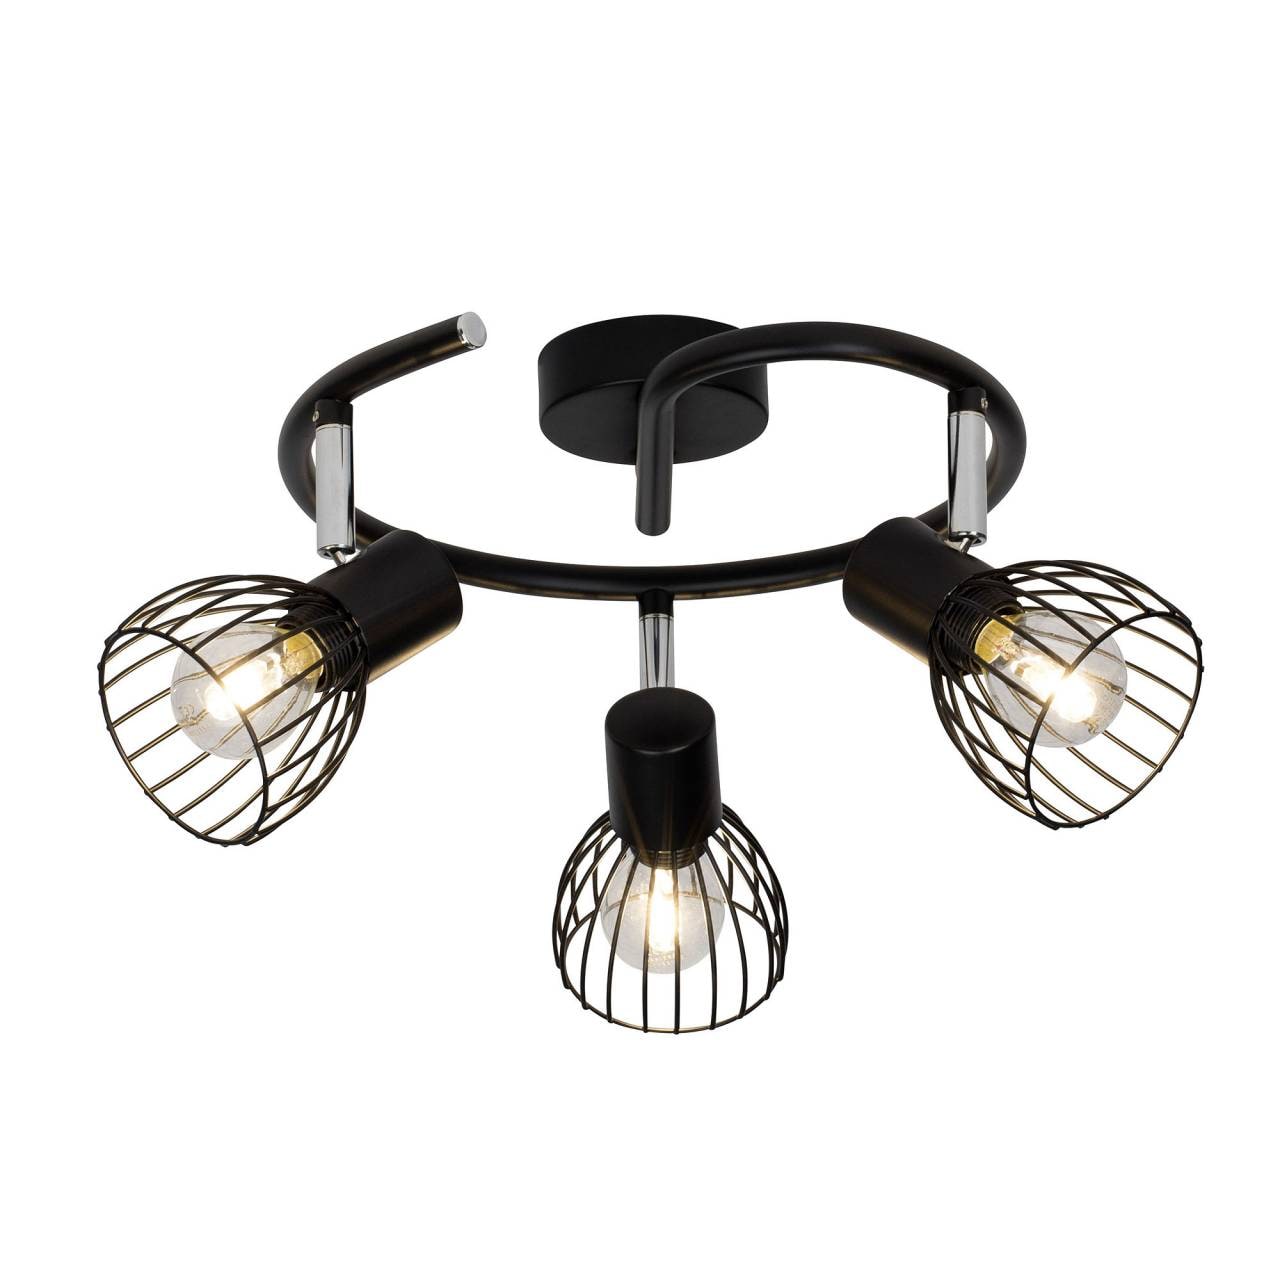 BRILLIANT Lampe Blacky Spotspirale 3flg schwarz   3x D45, E14, 40W, geeignet für Tropfenlampen (nicht enthalten)   Für L